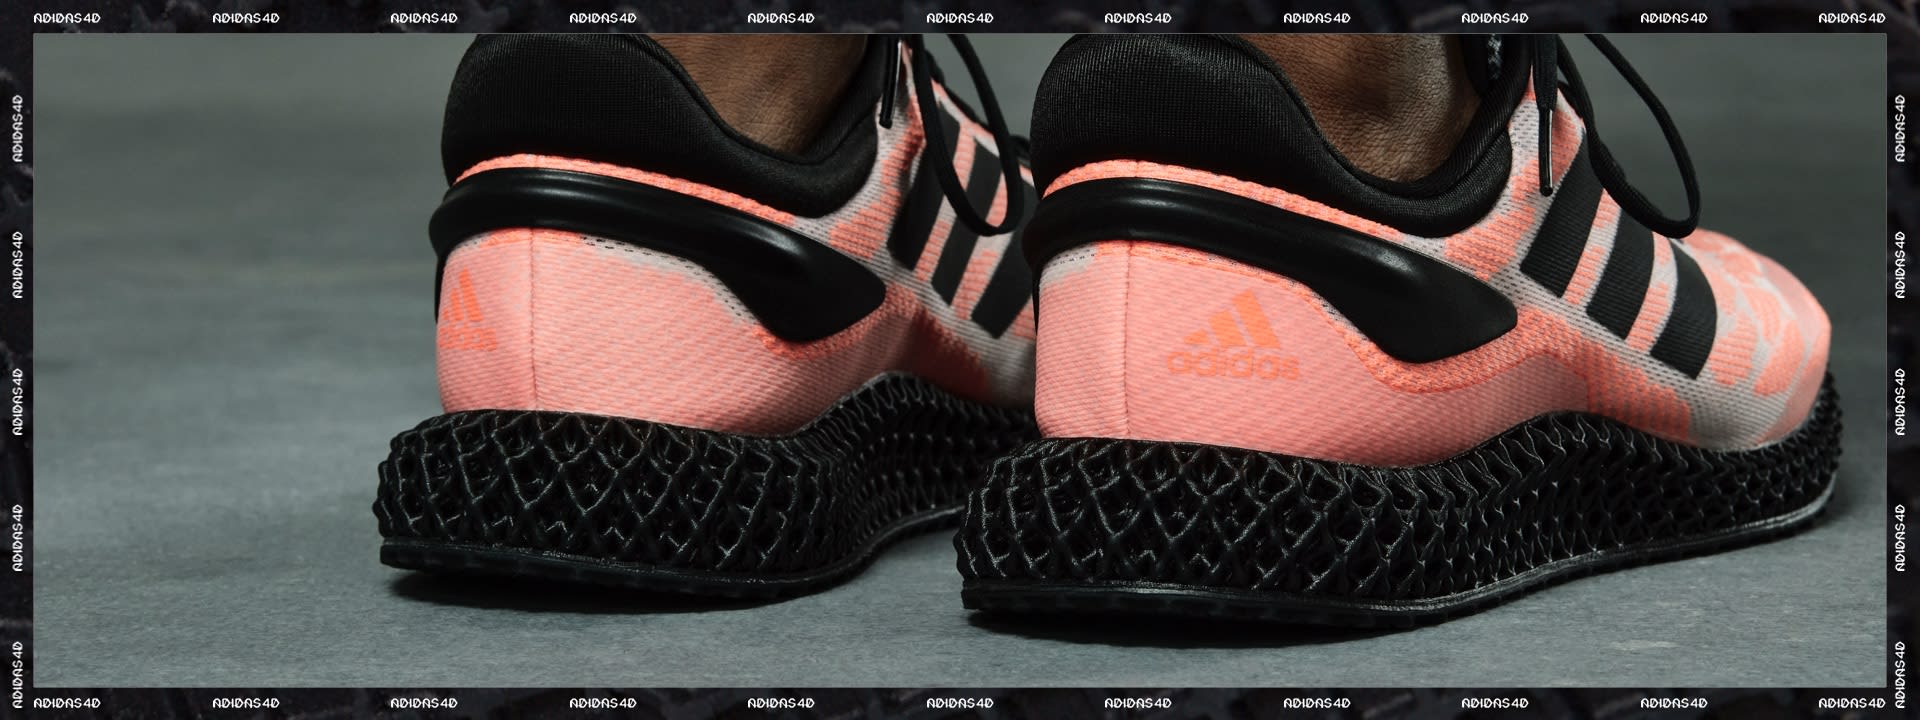 adidas schoenen kopen online